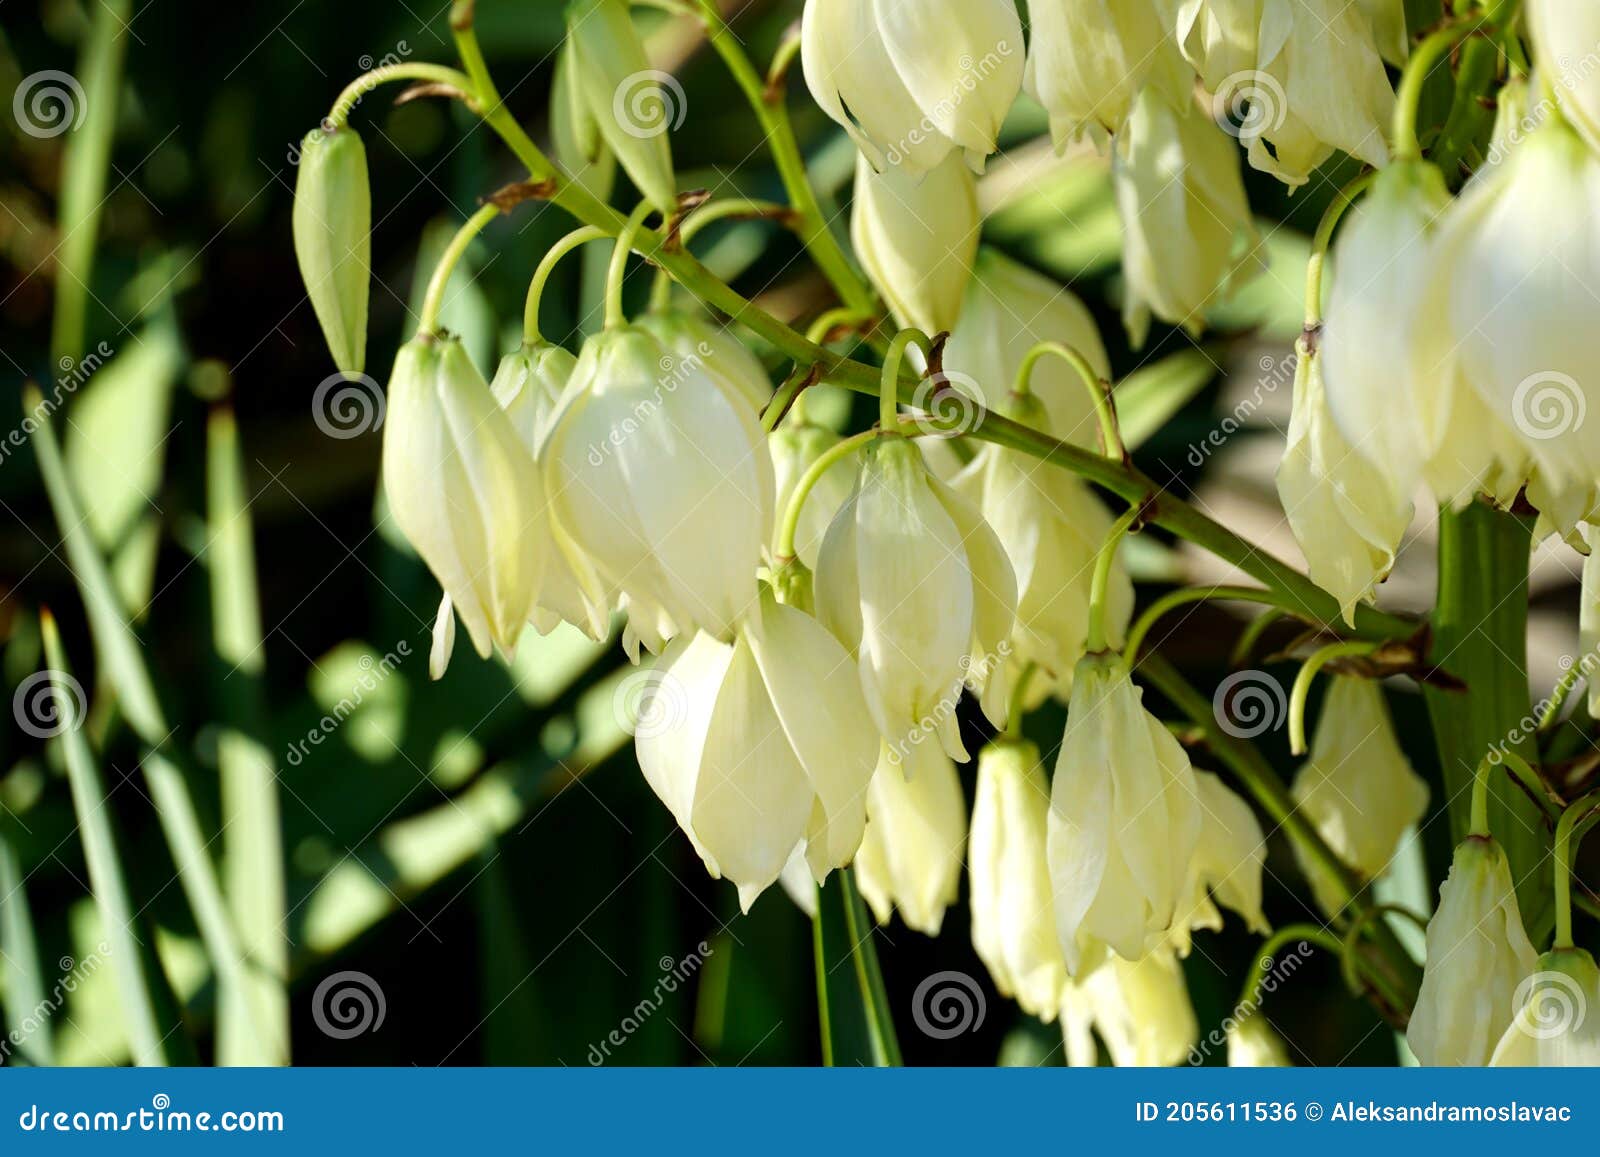 Une Plante Qui S'épanouit Avec Des Fleurs Comme De Petites Clochettes  Blanches Photo stock - Image du floraison, pelouse: 205611536